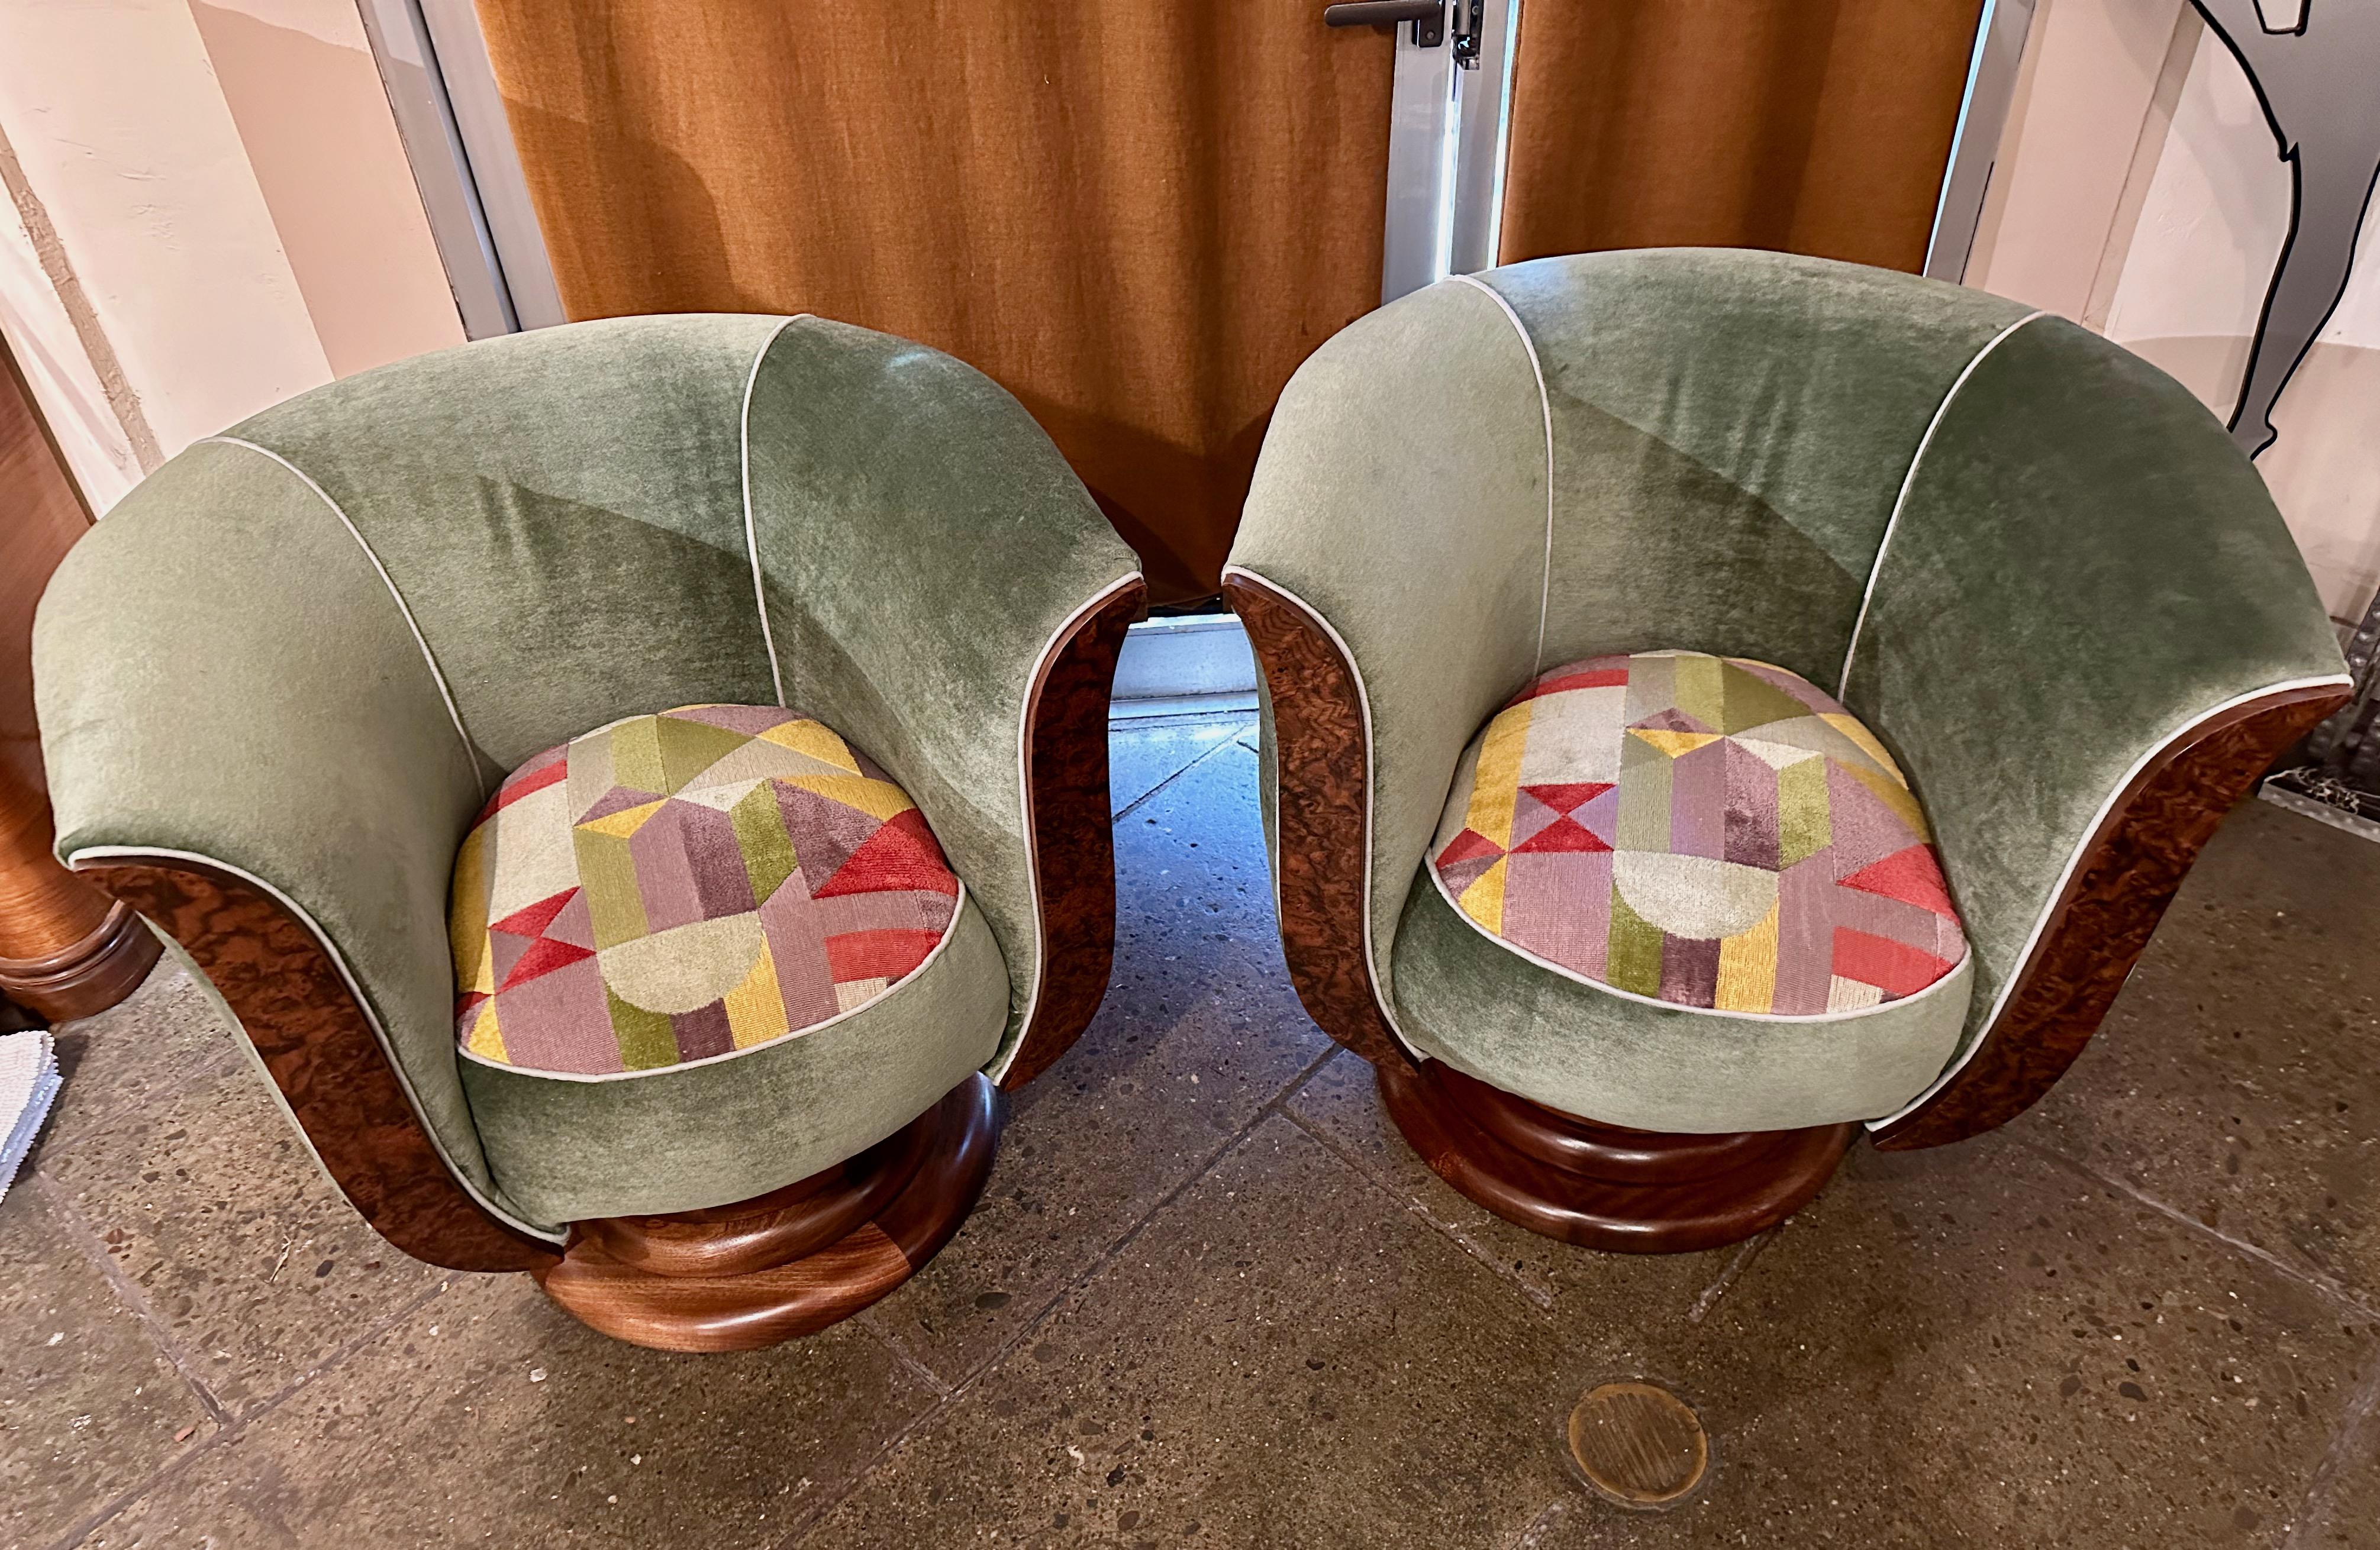 Les fauteuils club pivotants Art déco sont de retour. C'est une chaise que nous promouvons depuis des années. À l'origine, nous les avons achetés en France (l'histoire veut qu'ils sortent d'un hôtel). Nous avons apporté quelques modifications, et